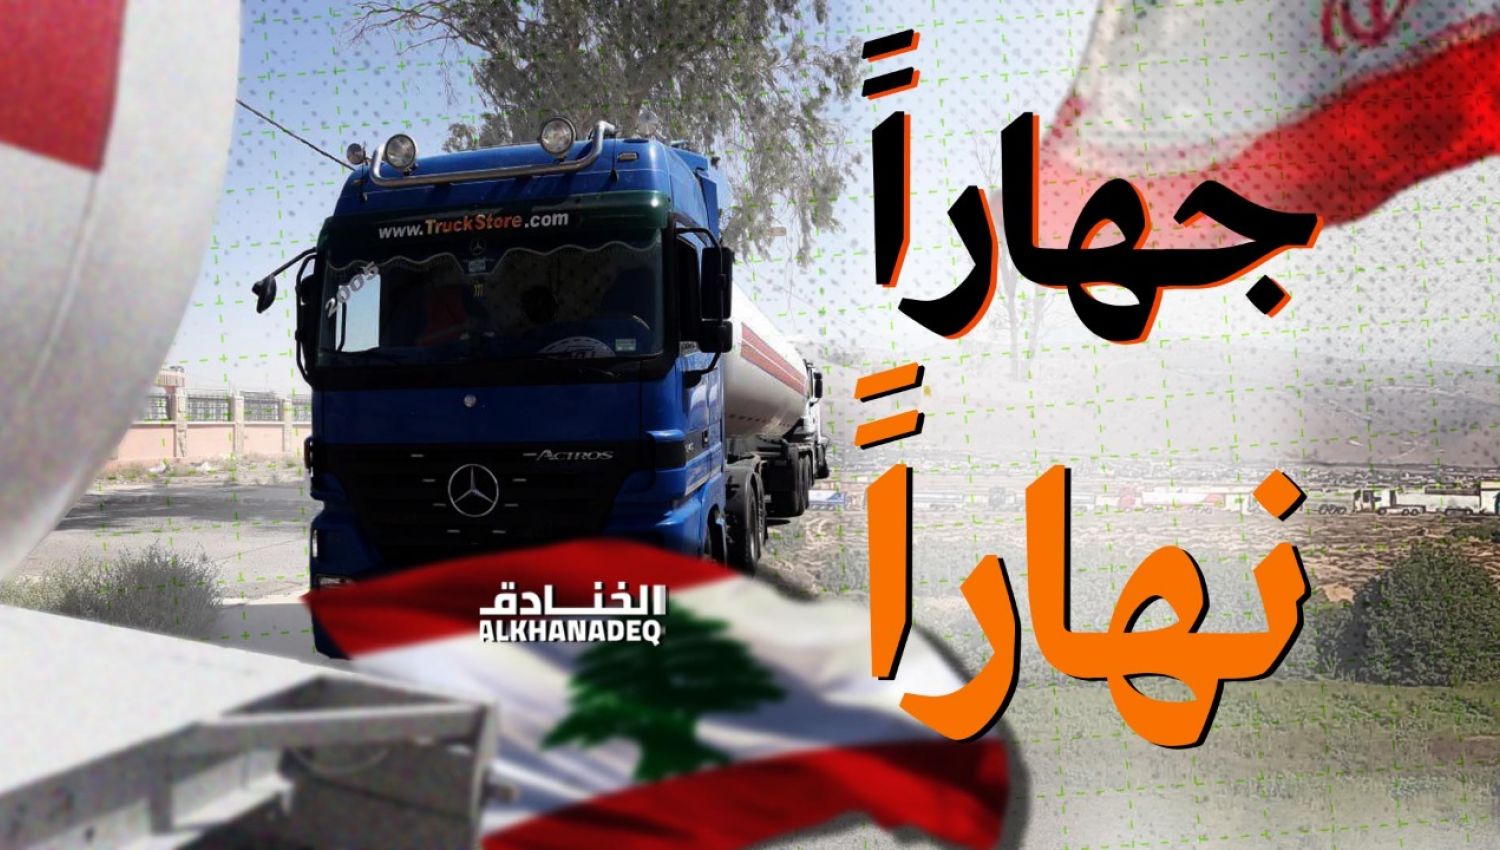 النفط الايراني والحضور السوري.. يفضح "البلطجة" الاميركية